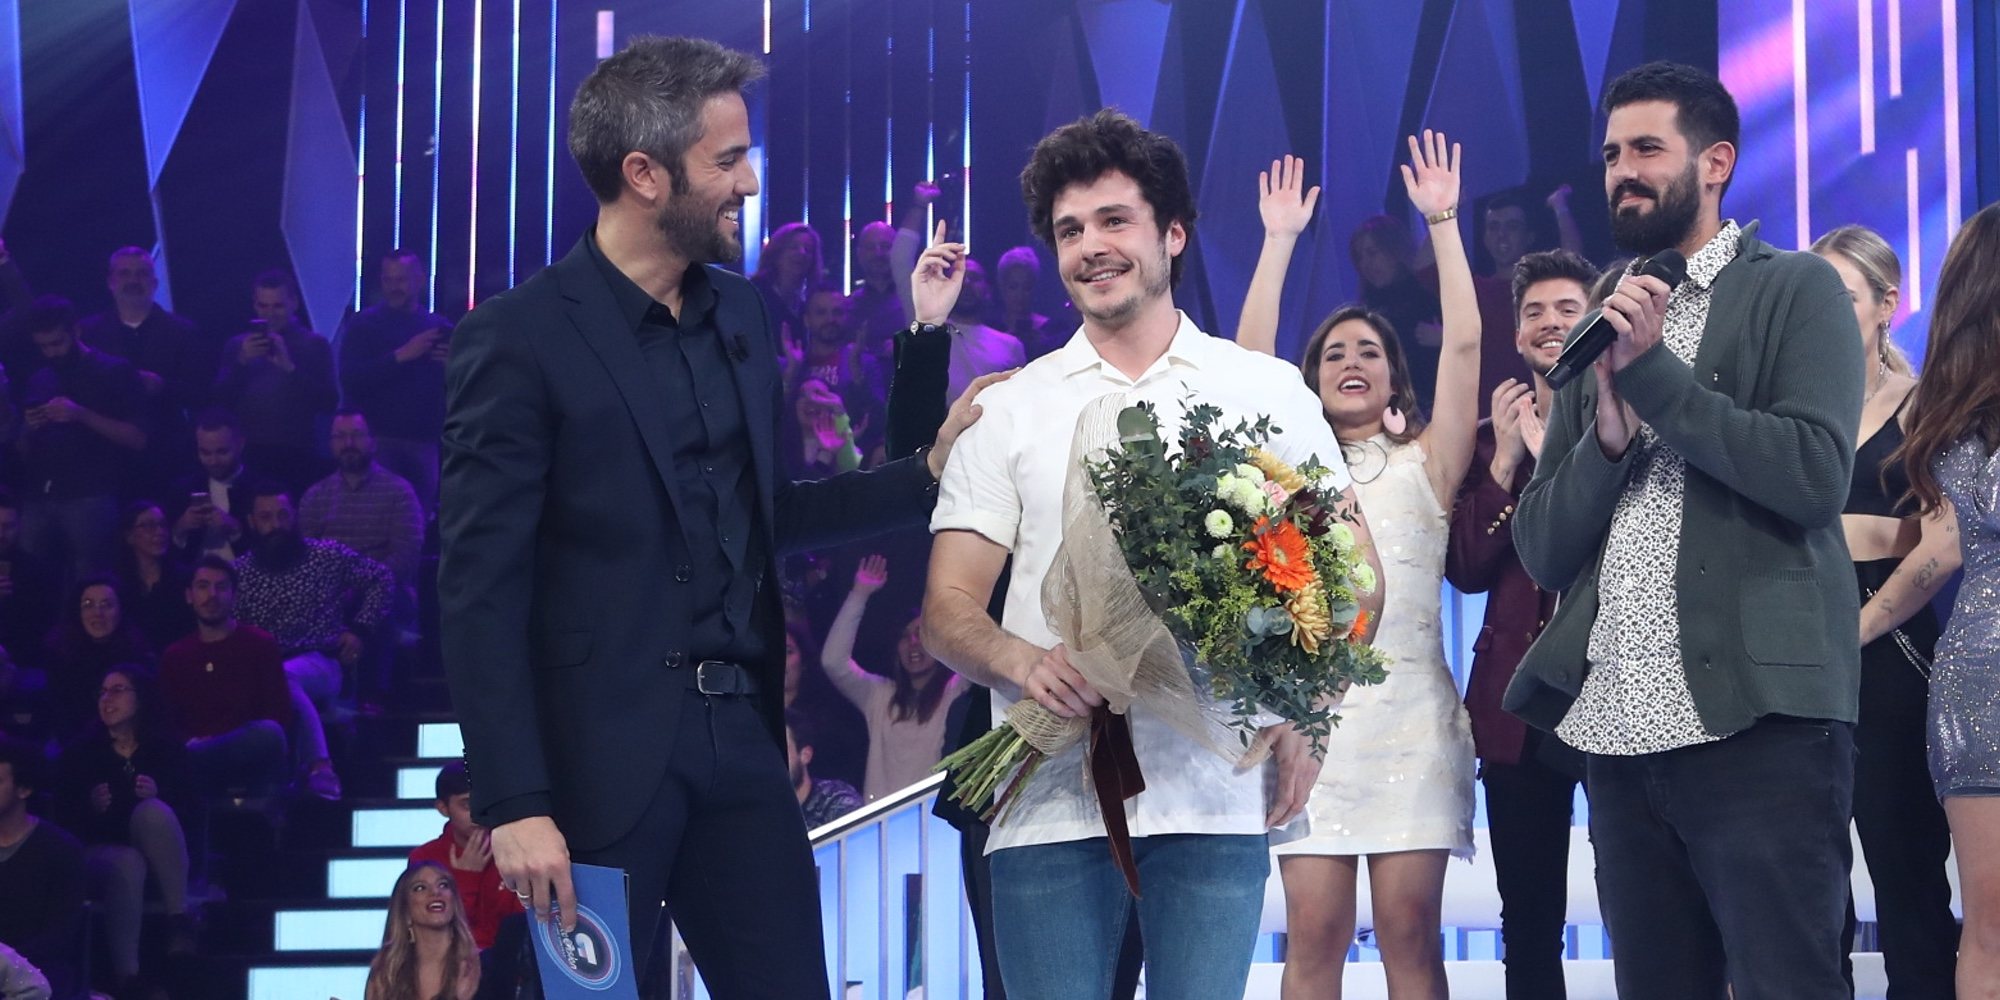 Miki, elegido como representante de España en Eurovisión 2019 con 'La venda'